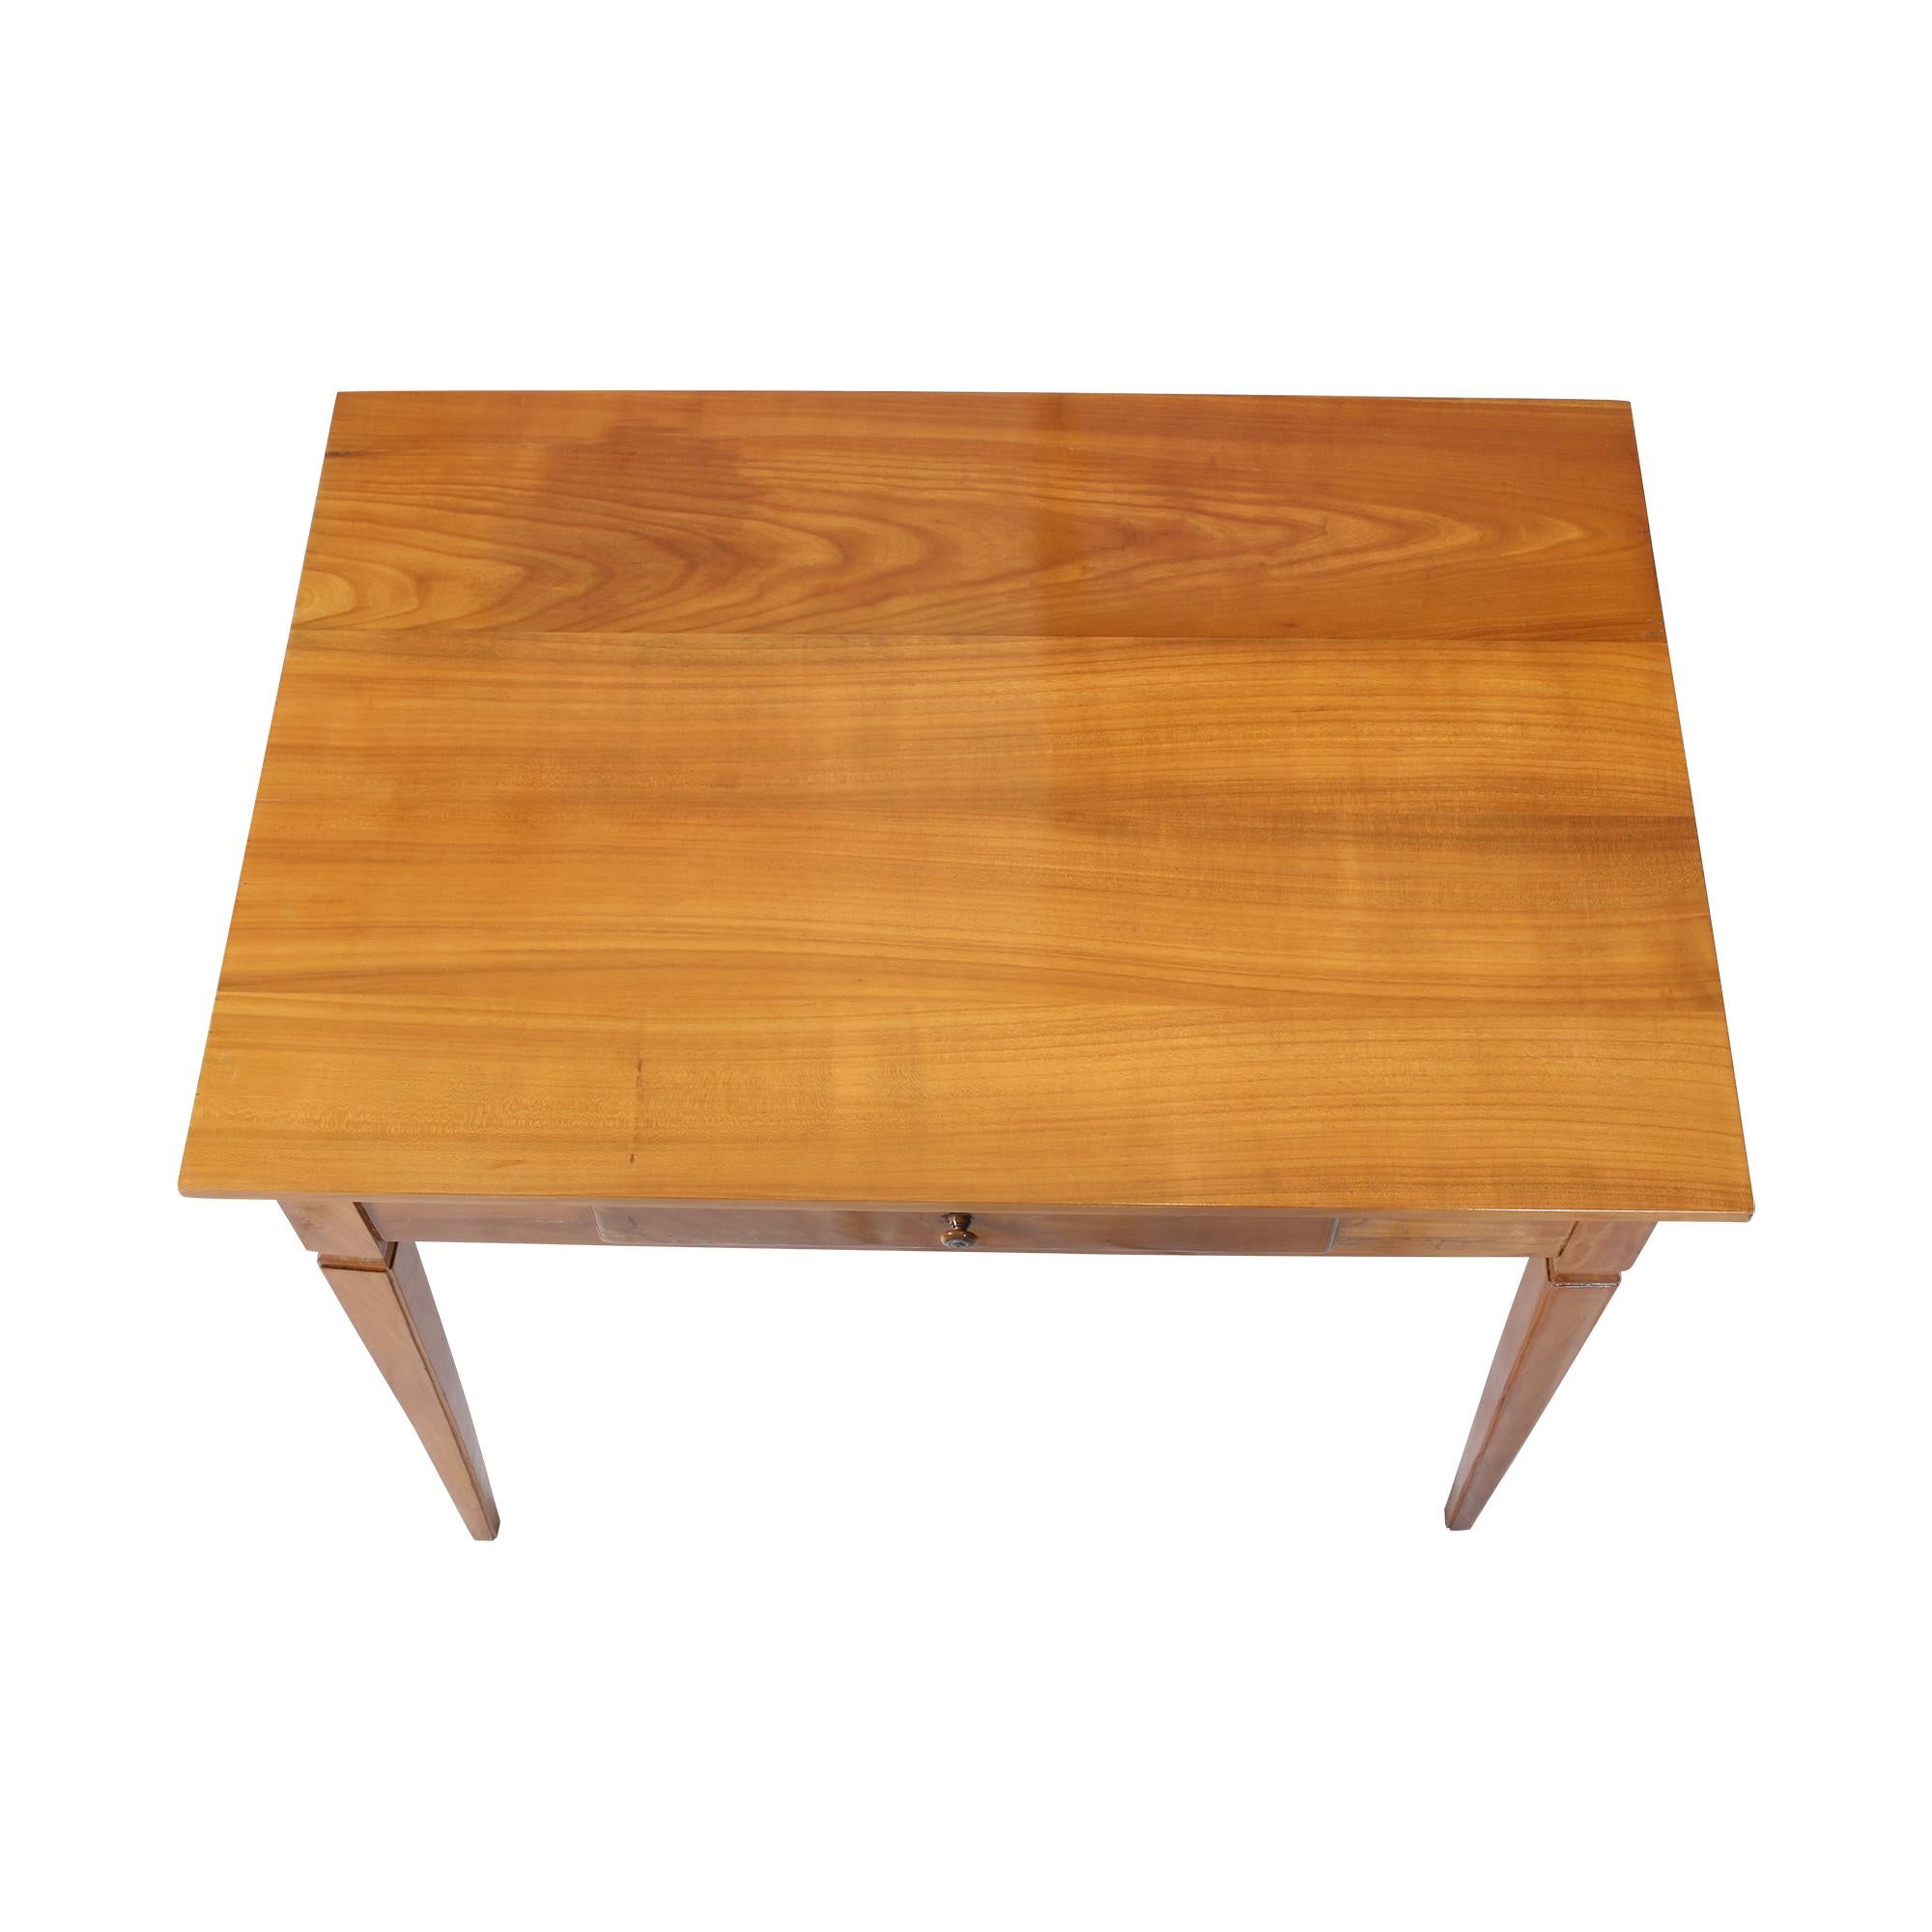 La magnifique table de salon que nous avons sous les yeux est un véritable chef-d'œuvre. Il date de la période Biedermeier, vers 1830 en Allemagne, et est fabriqué en bois de cerisier massif. Ce type de bois est non seulement extrêmement résistant